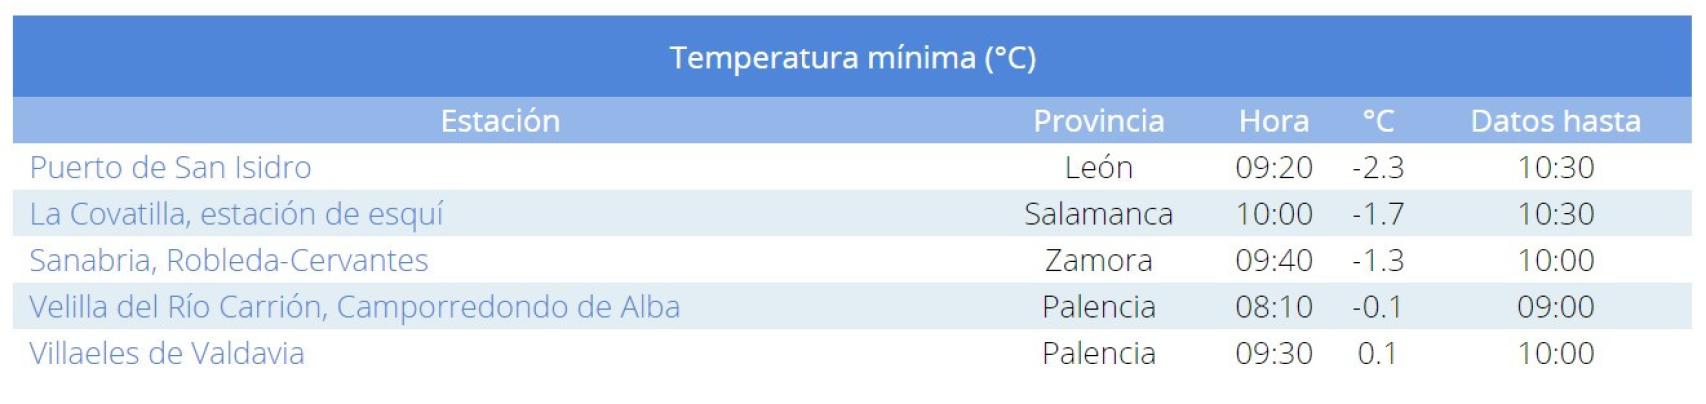 Temperaturas registradas en la madrugada del día 2 de enero